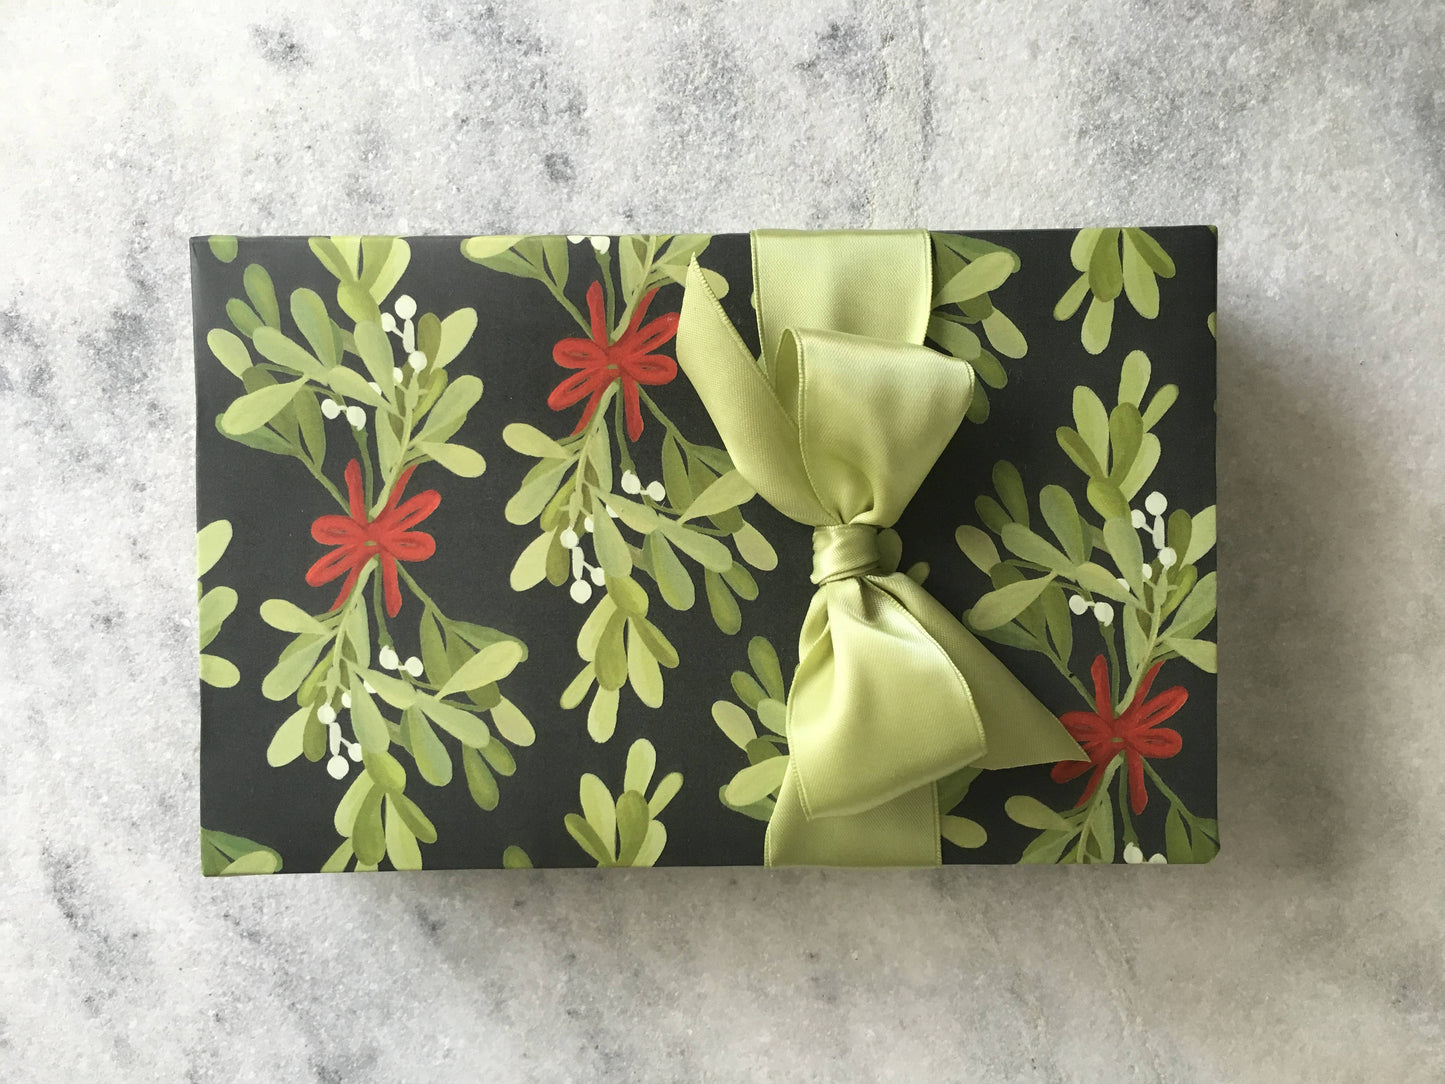 Reversible Mistletoe Gift Wrap Sheets